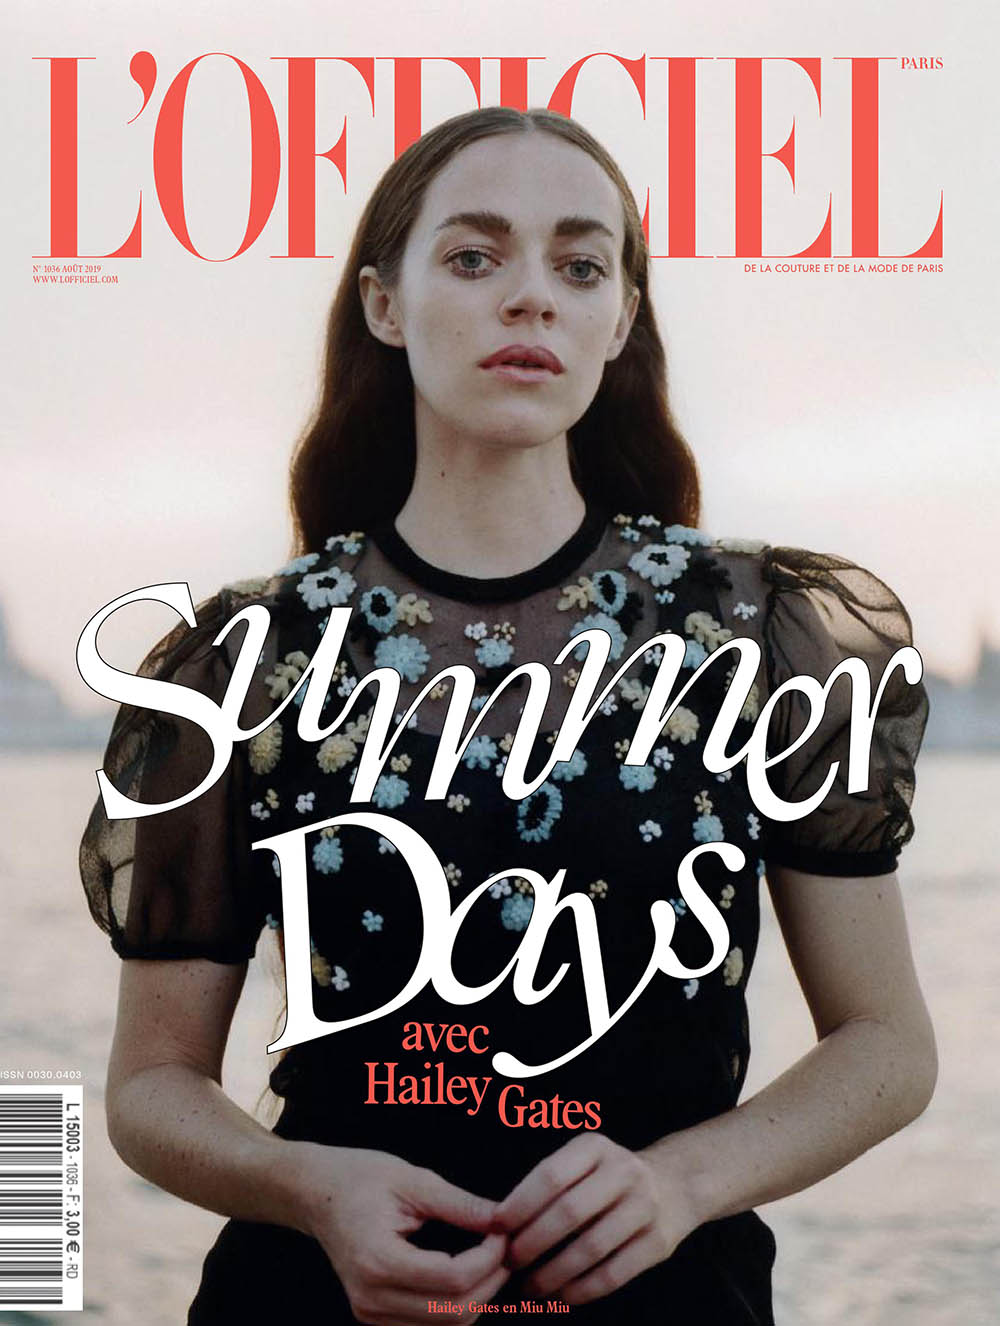 Hailey Gates covers L’Officiel Paris August 2019 by Daniyel Lowden